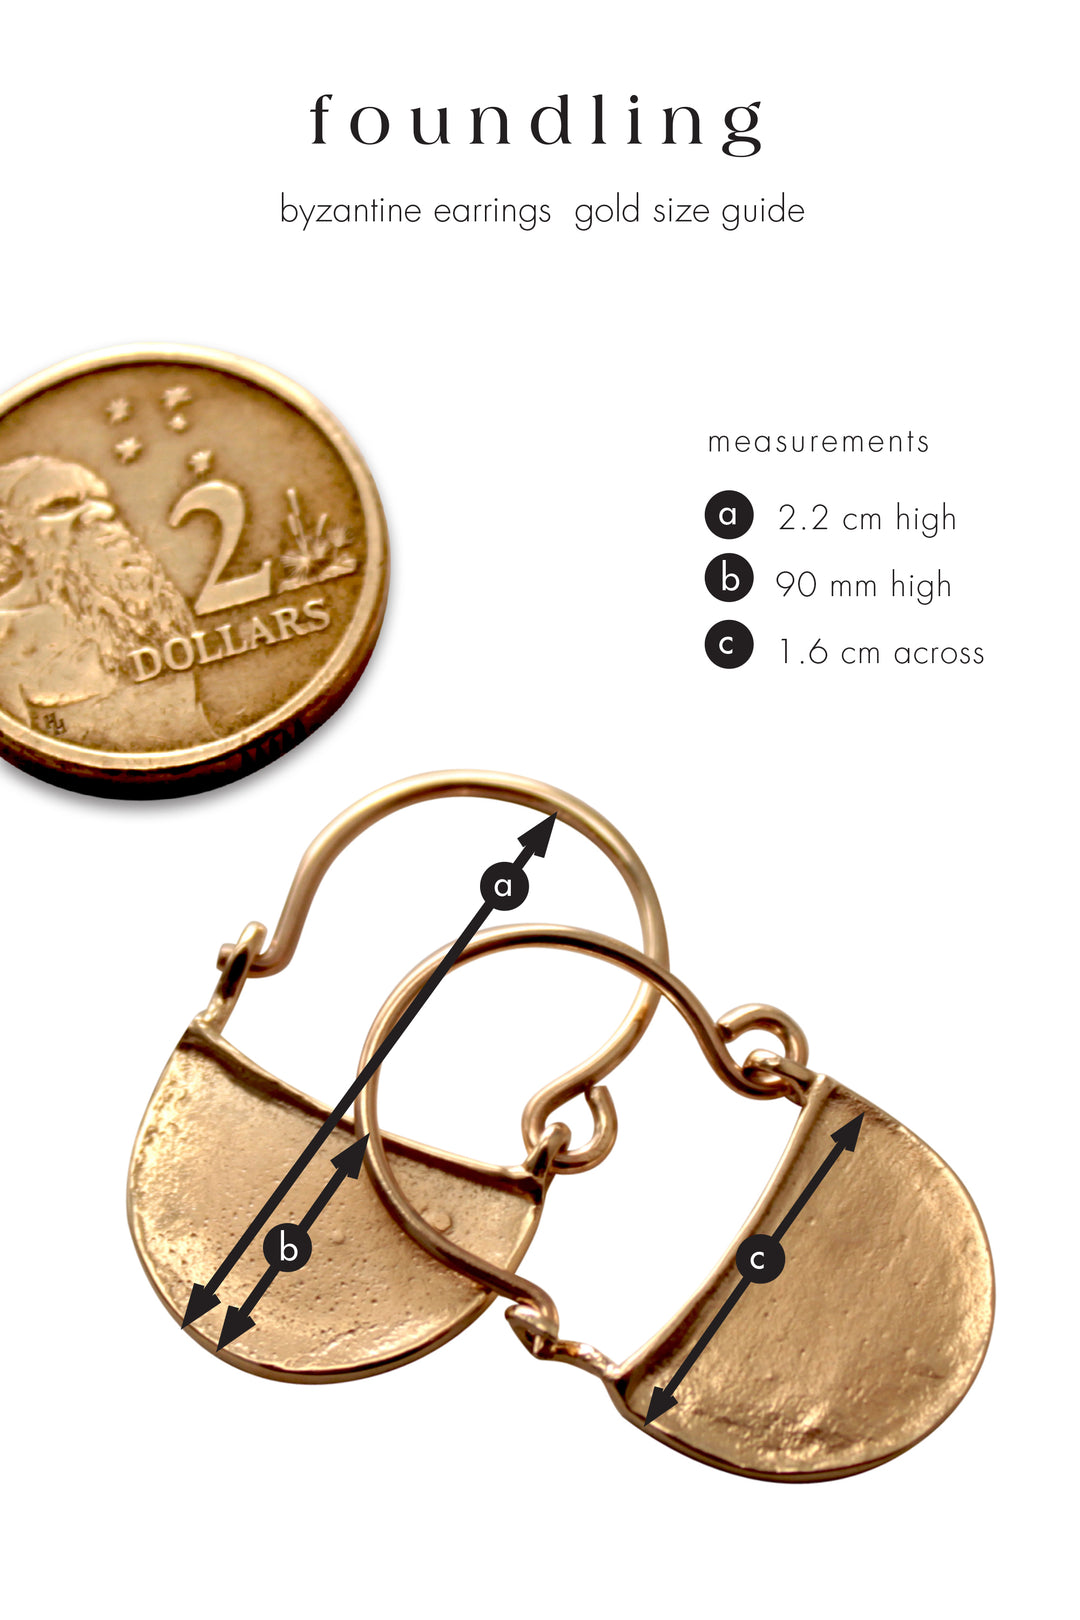 Byzantine earrings gold